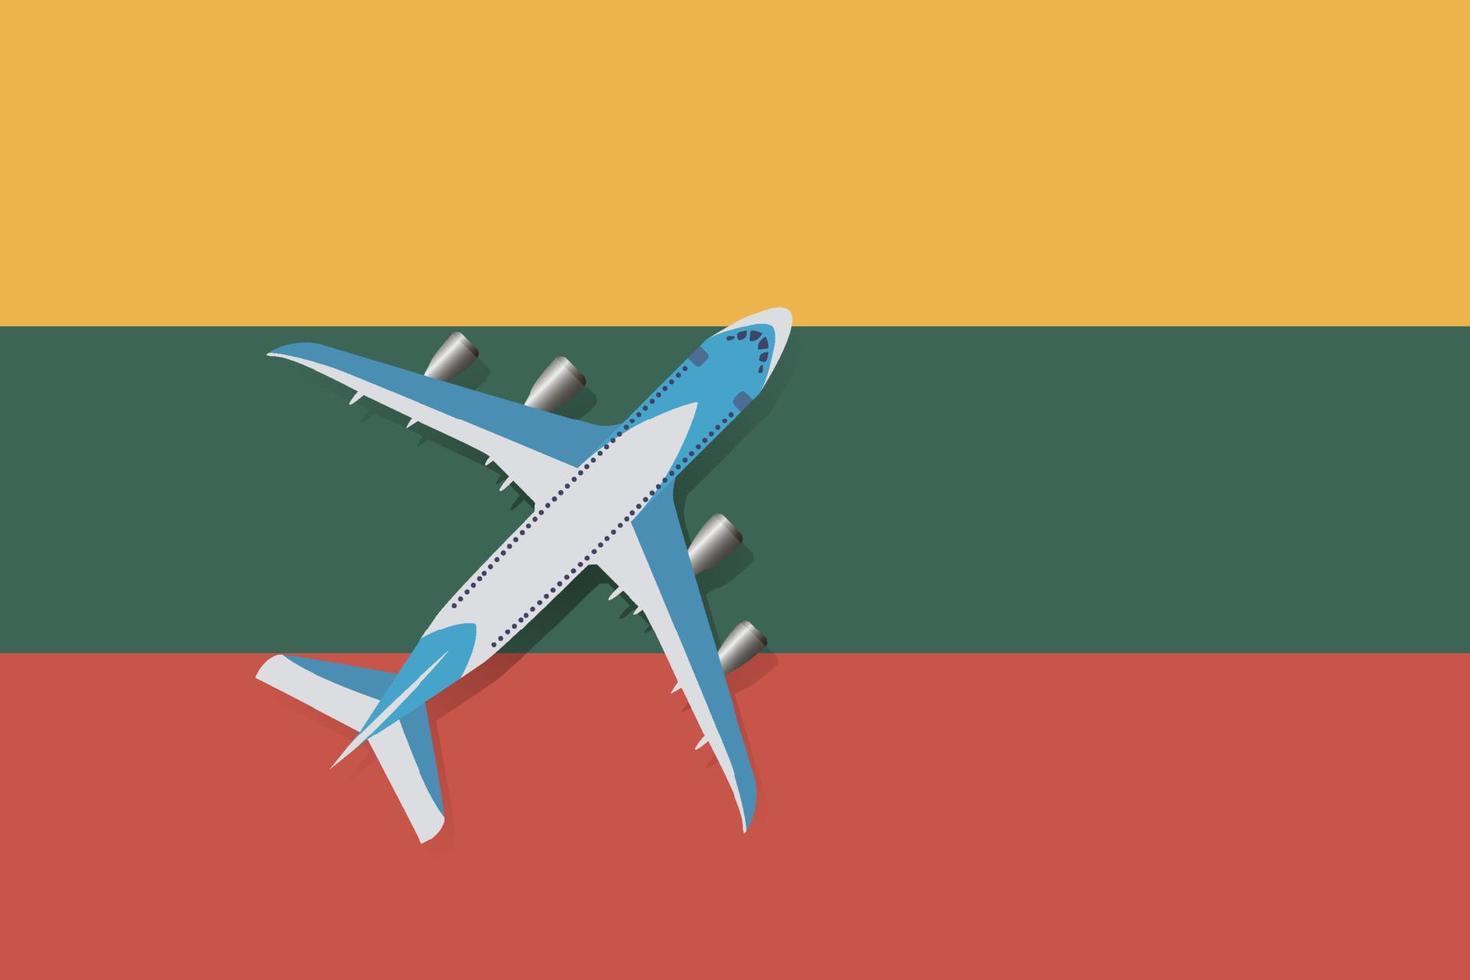 illustrazione vettoriale di un aereo passeggeri che sorvola la bandiera della lituania. concetto di turismo e viaggi